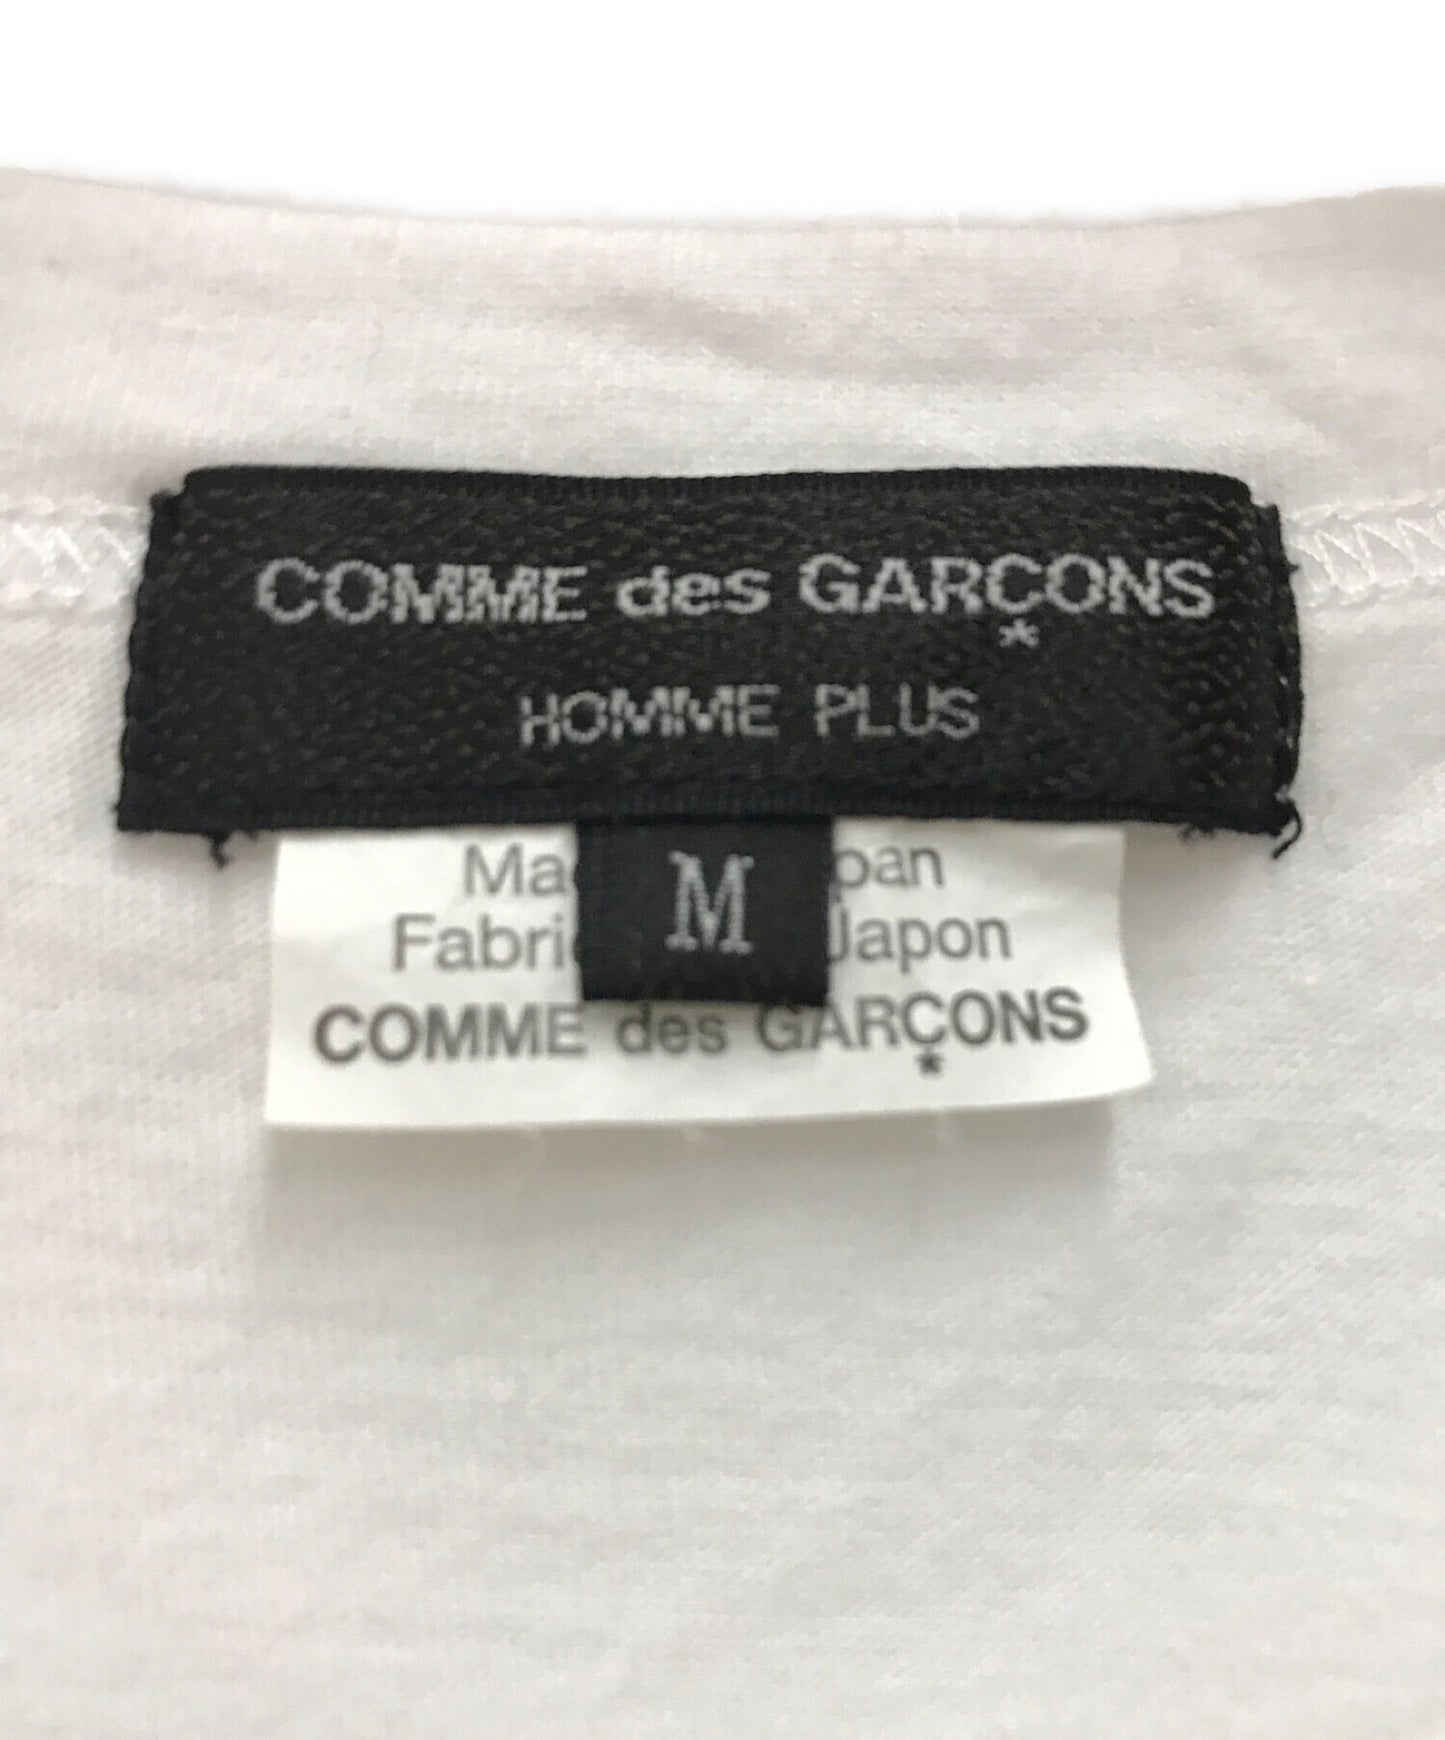 Comme des Garcons Homme Plus Mona Luison Print S / S Tee / Mona Luison 인쇄면 티셔츠